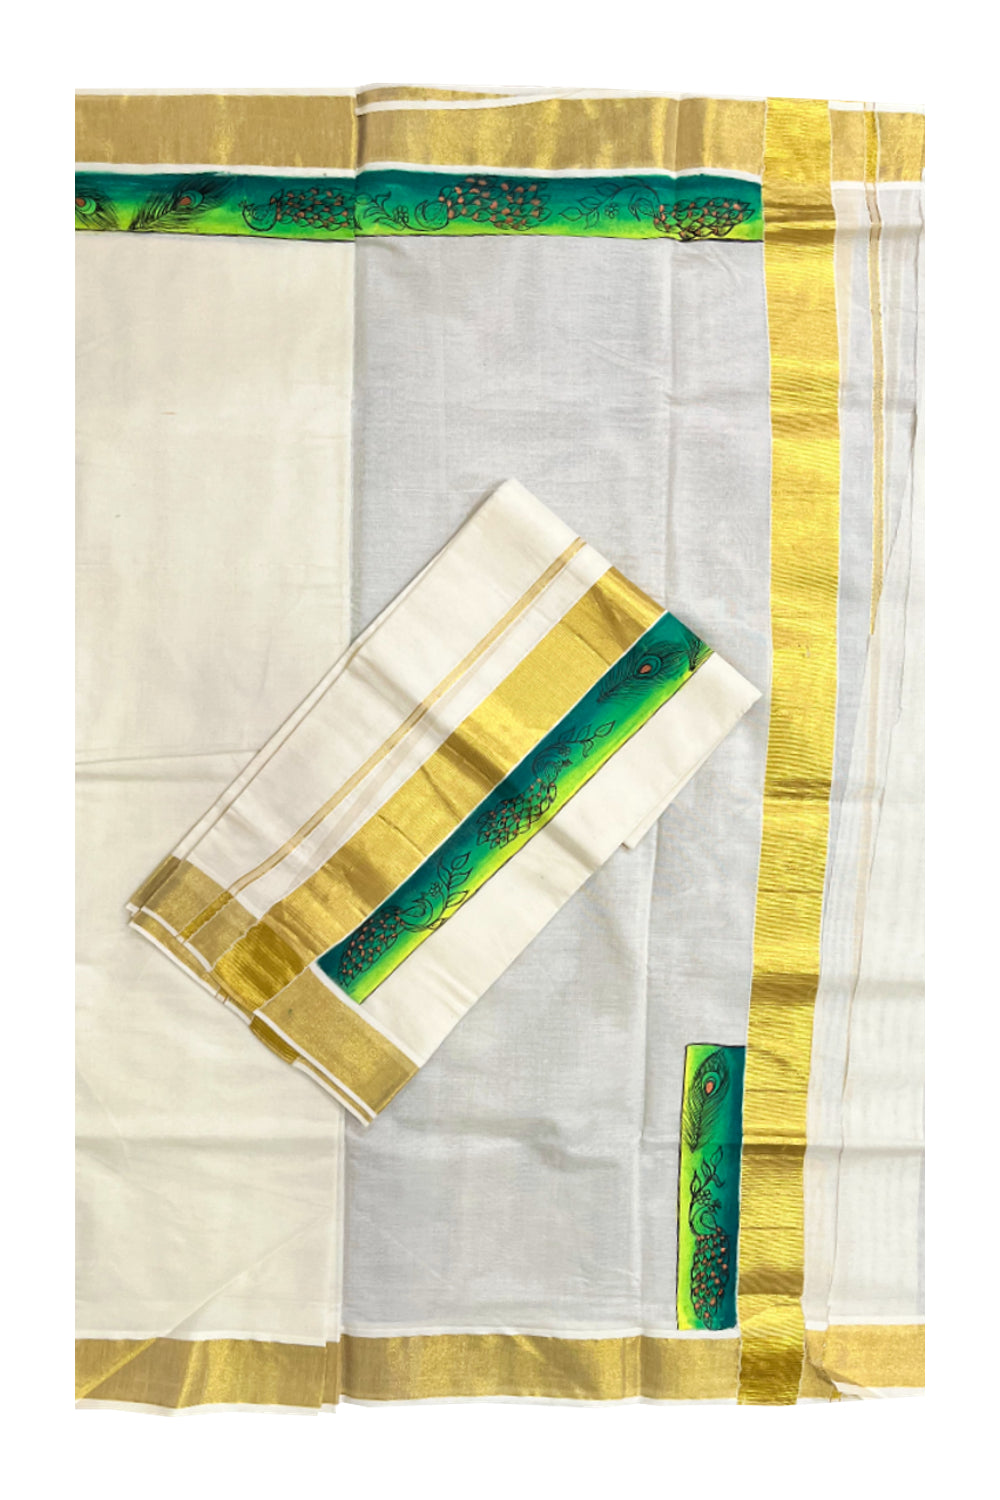 Kerala Cotton Single Set Mundu (Mundum Neriyathum) with Hand Painted Designs with Kasavu Border - 2.80Mtrs